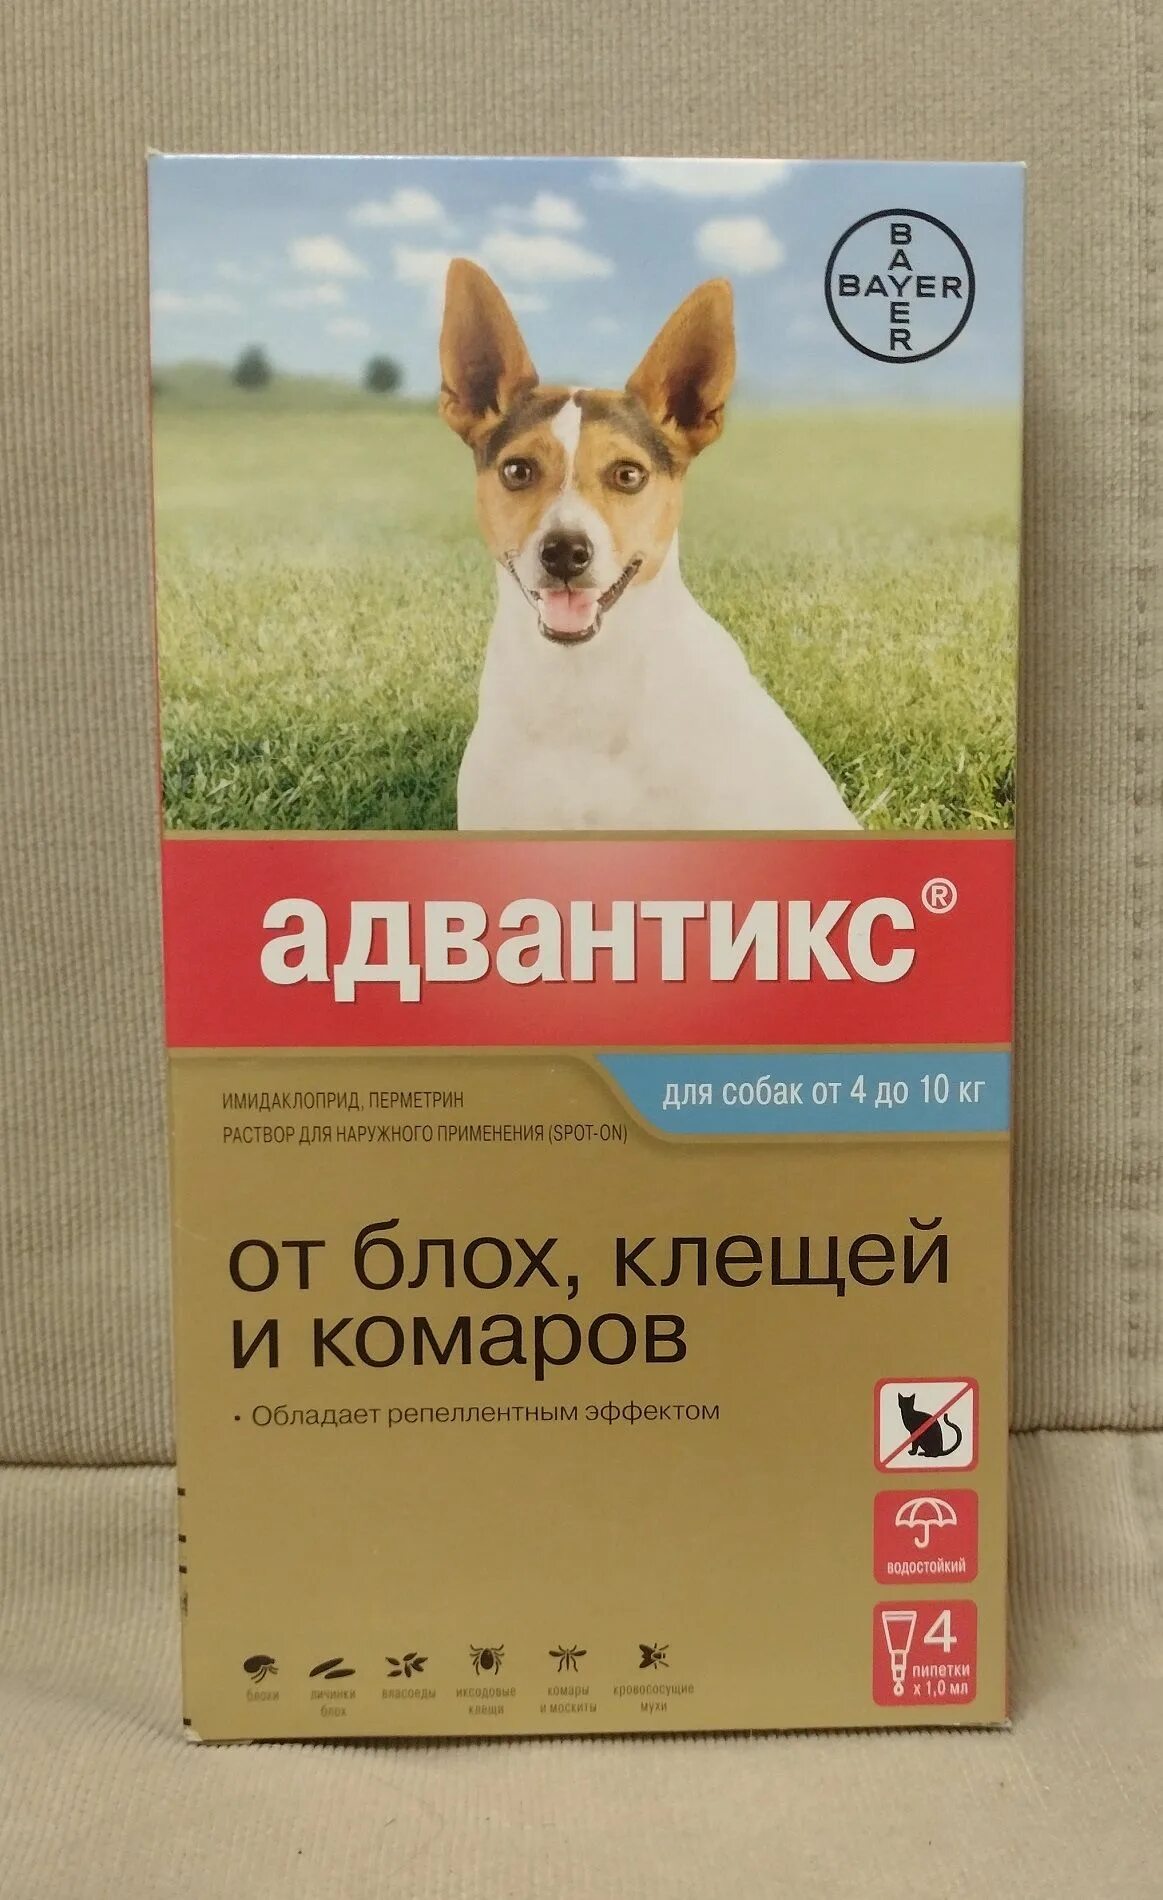 Адвантикс для собак до 4 кг. Адвантикс для собак (4 пипетки) 10-25кг. Адвантикс для собак (4 пипетки) 4-10кг. Advantix капли для собак до 10 кг. Адвантикс для собак 4-10.